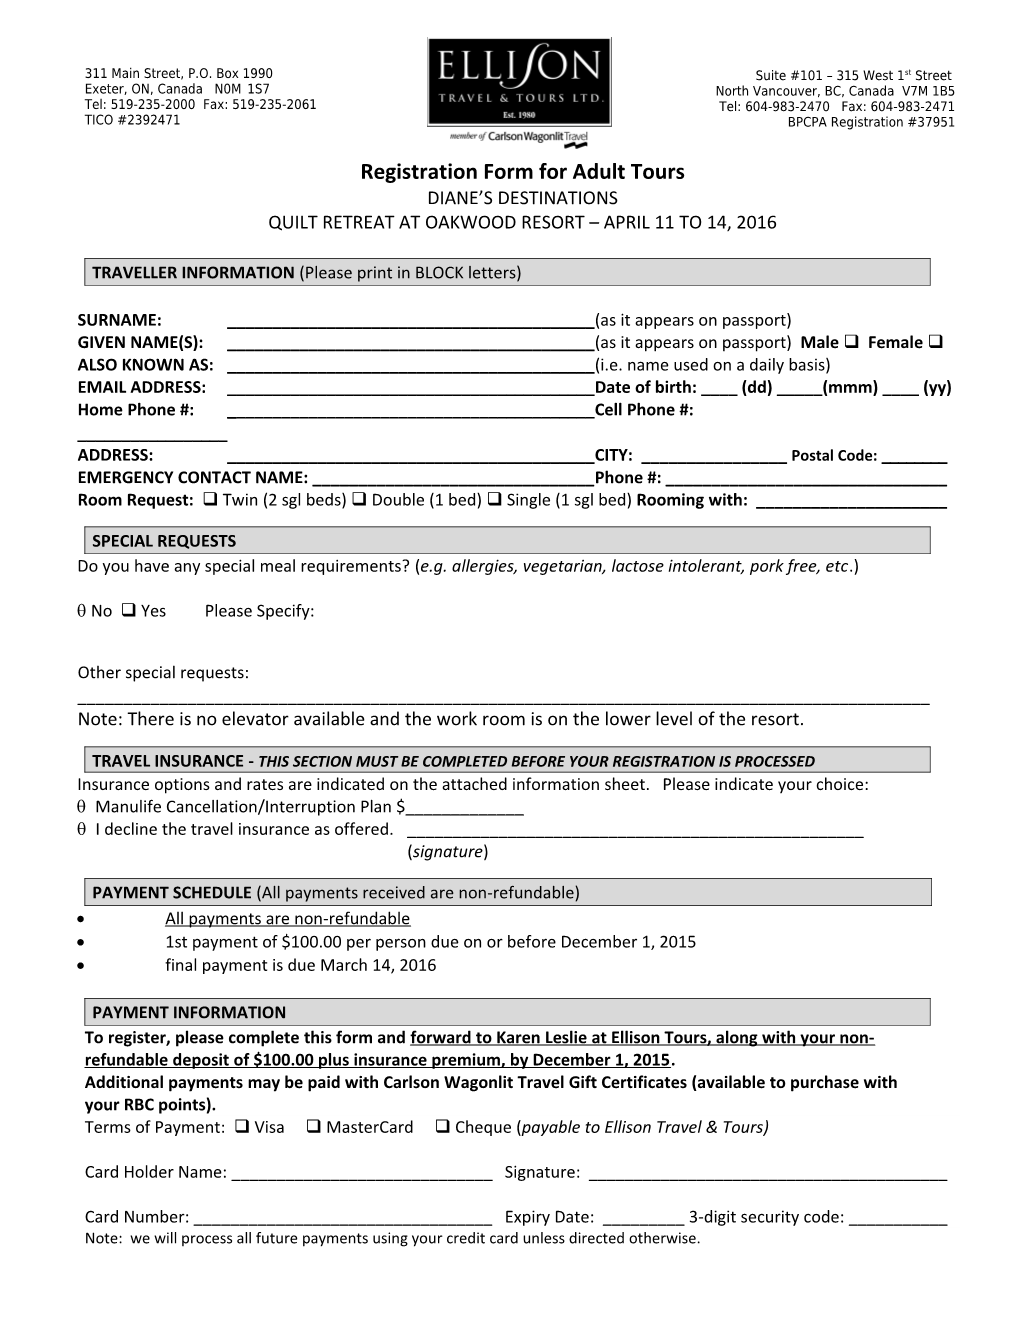 Registration Form for Adult Tours